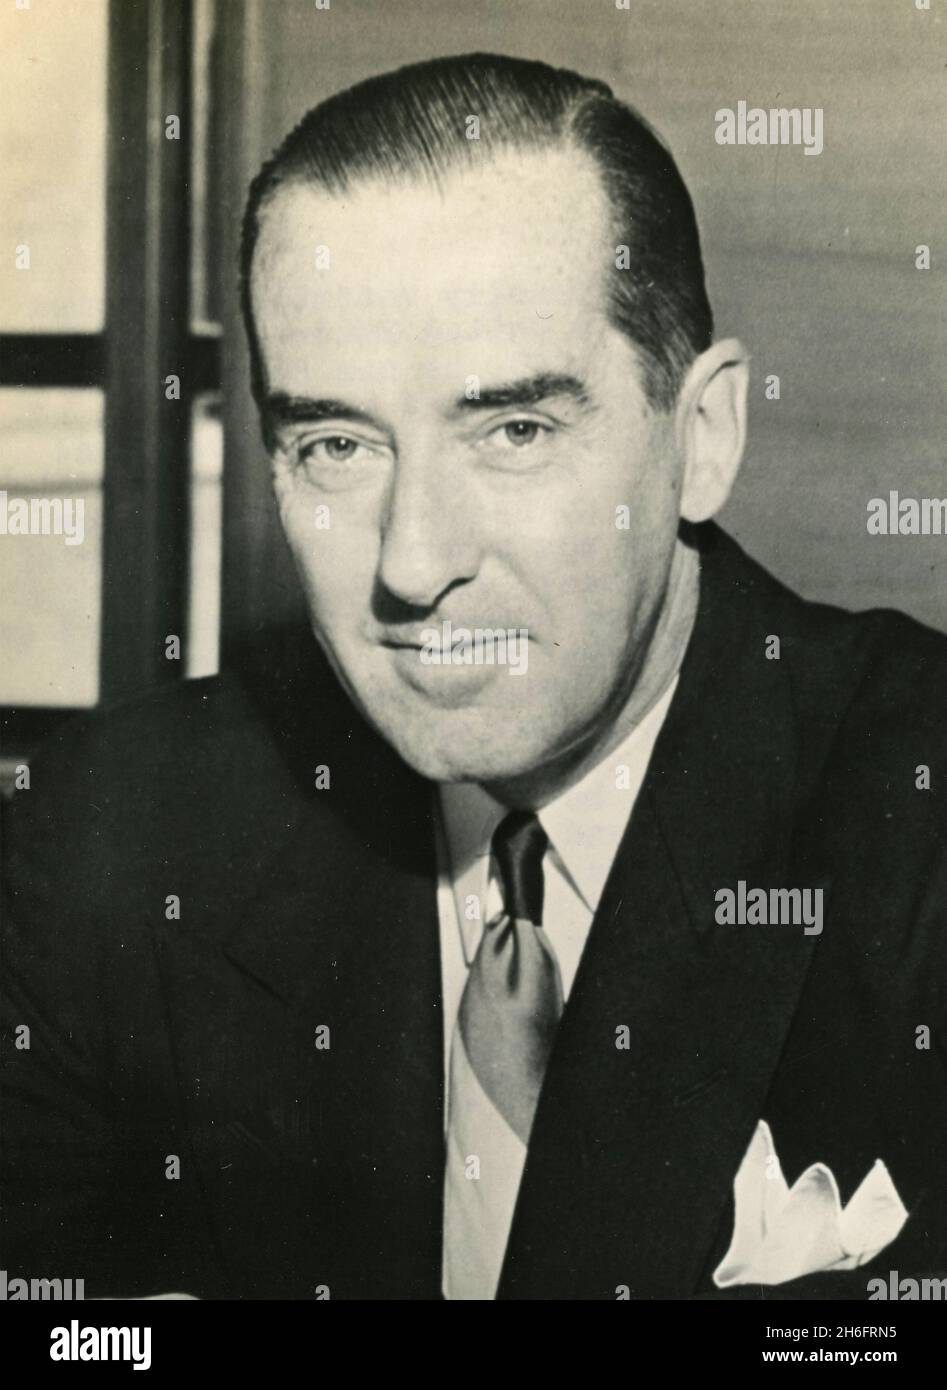 Le diplomate américain Walter J. Donnelly, ambassadeur des États-Unis en Autriche, États-Unis 1950 Banque D'Images